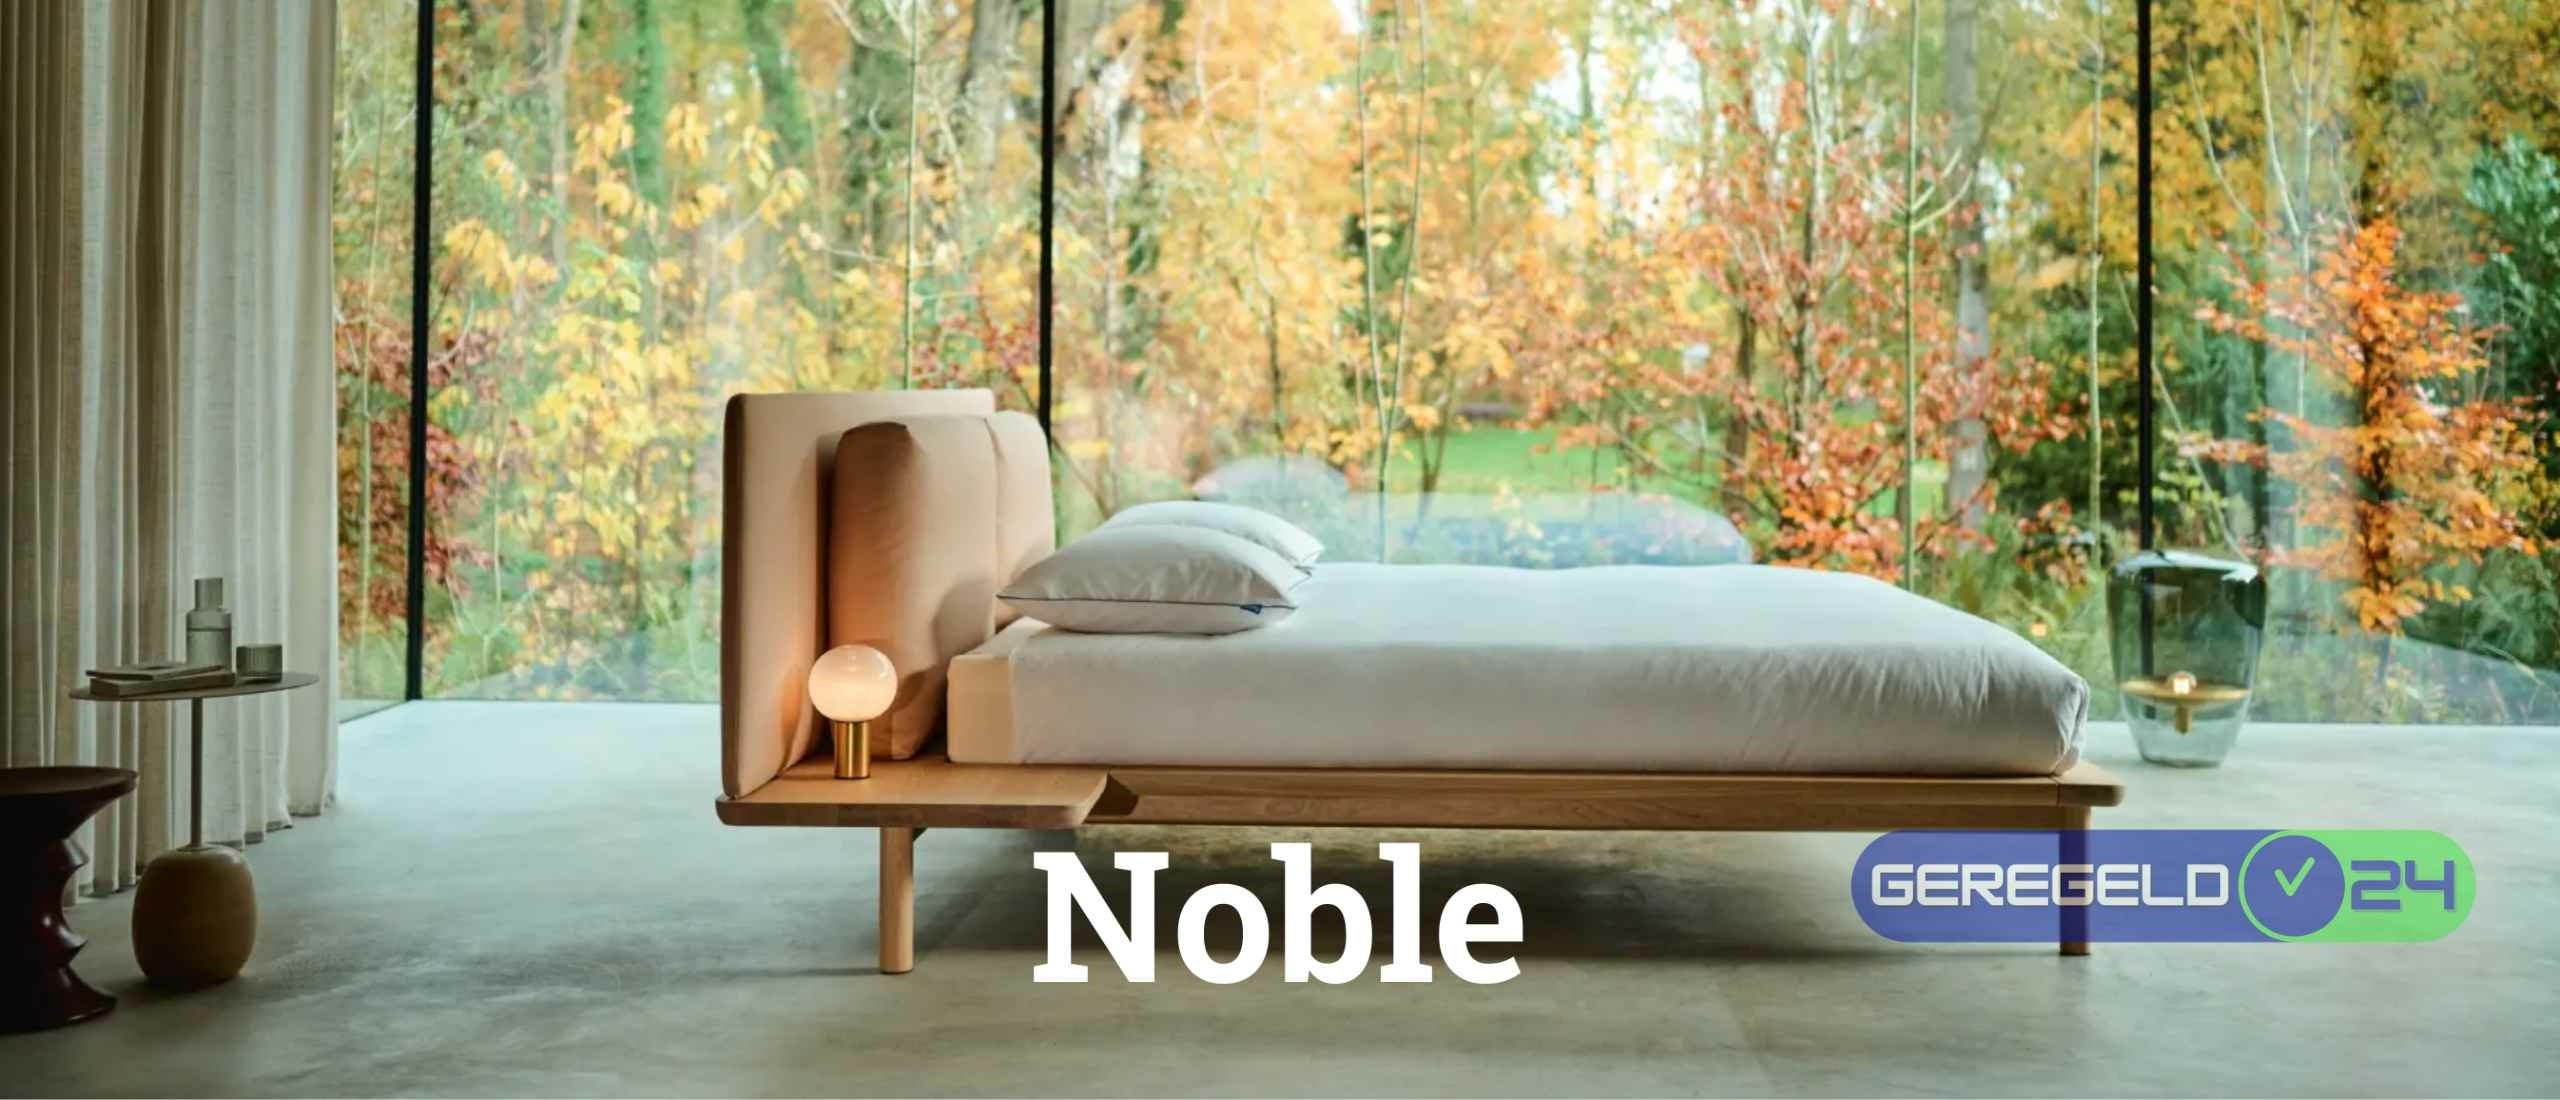 Auping Noble - Elegant Design